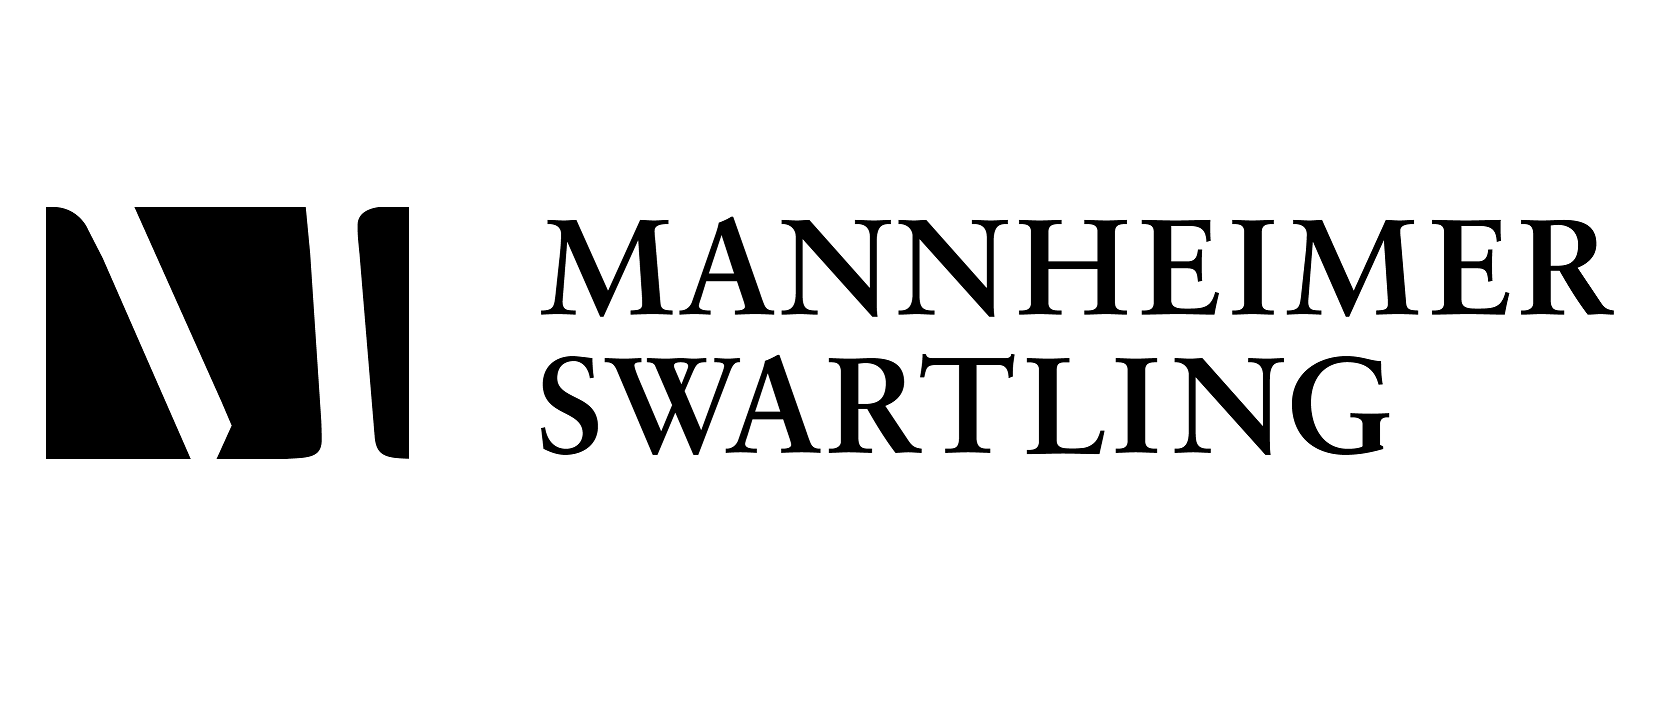 Mannheimer Swartling